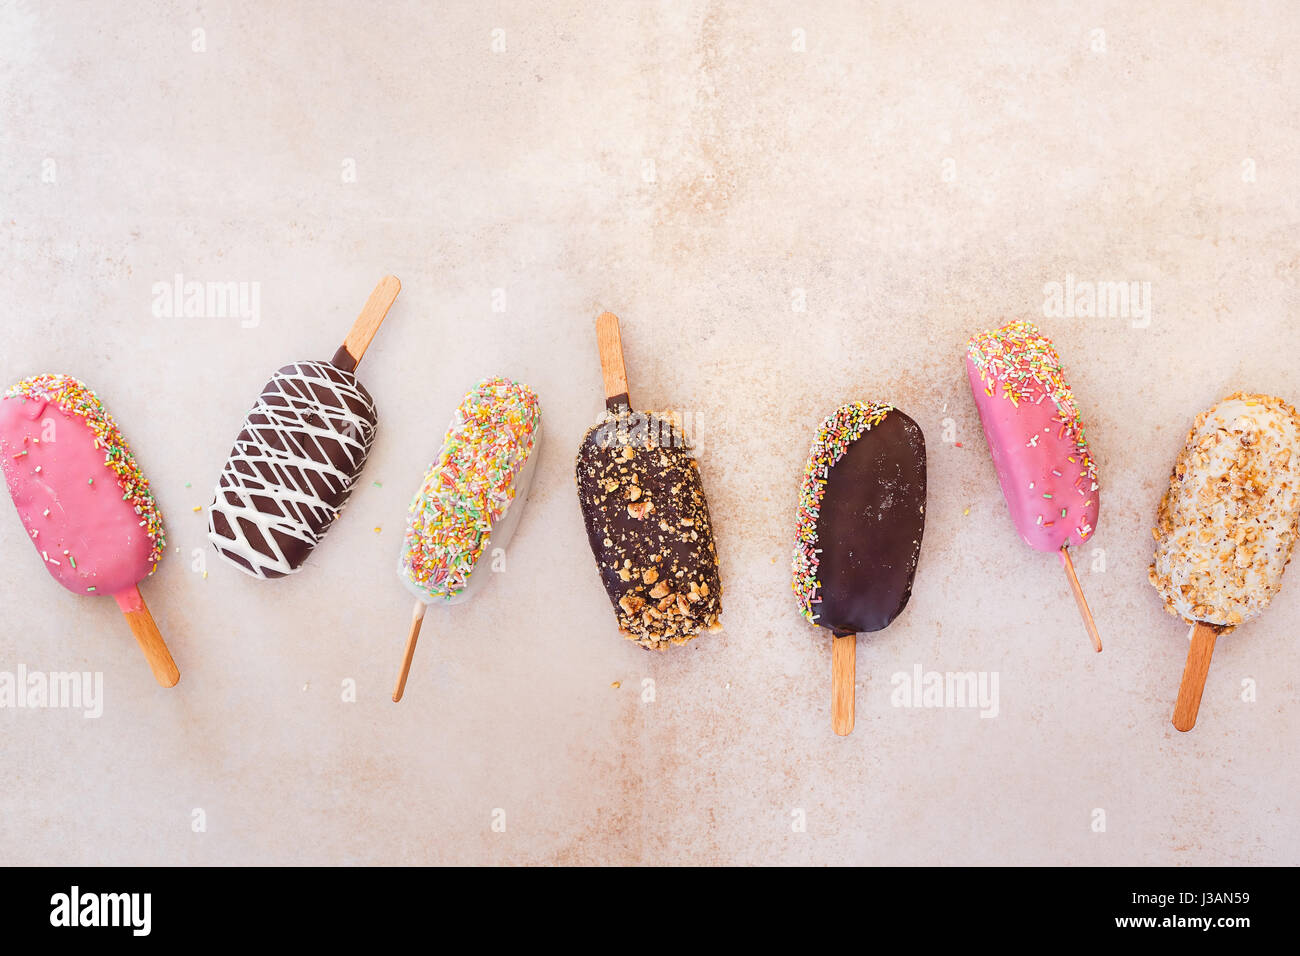 Eis-sticks mit Schokolade, Obst, gerösteten Mandeln und bunten Zucker Streusel auf rustikalen Hintergrund. Ansicht von oben, Leerzeichen Stockfoto